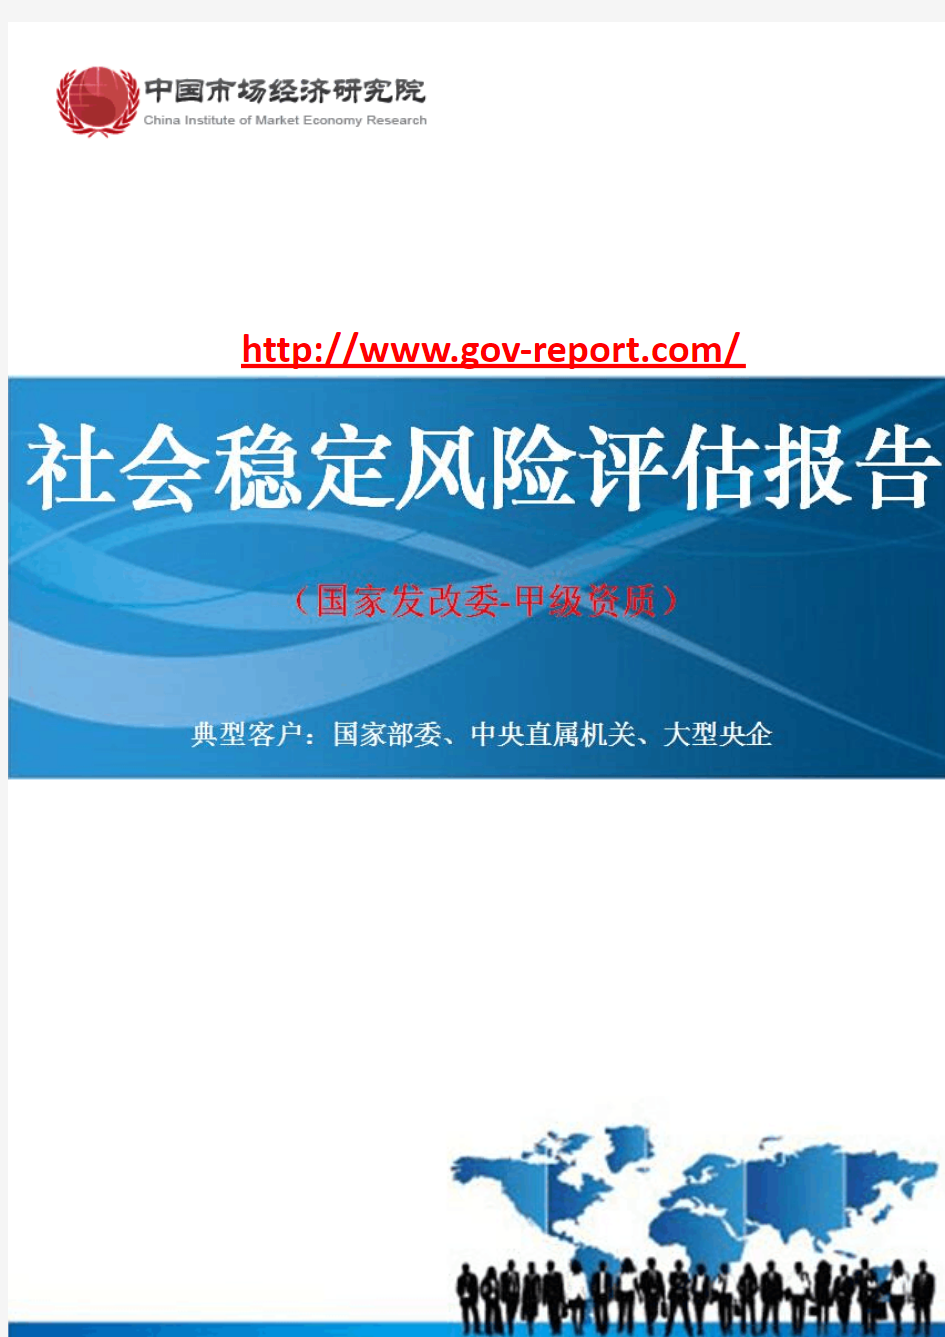 热电2×330MW热电联产工程项目社会稳定风险评估报告(中国市场经济研究院-工程咨询-甲级资质)